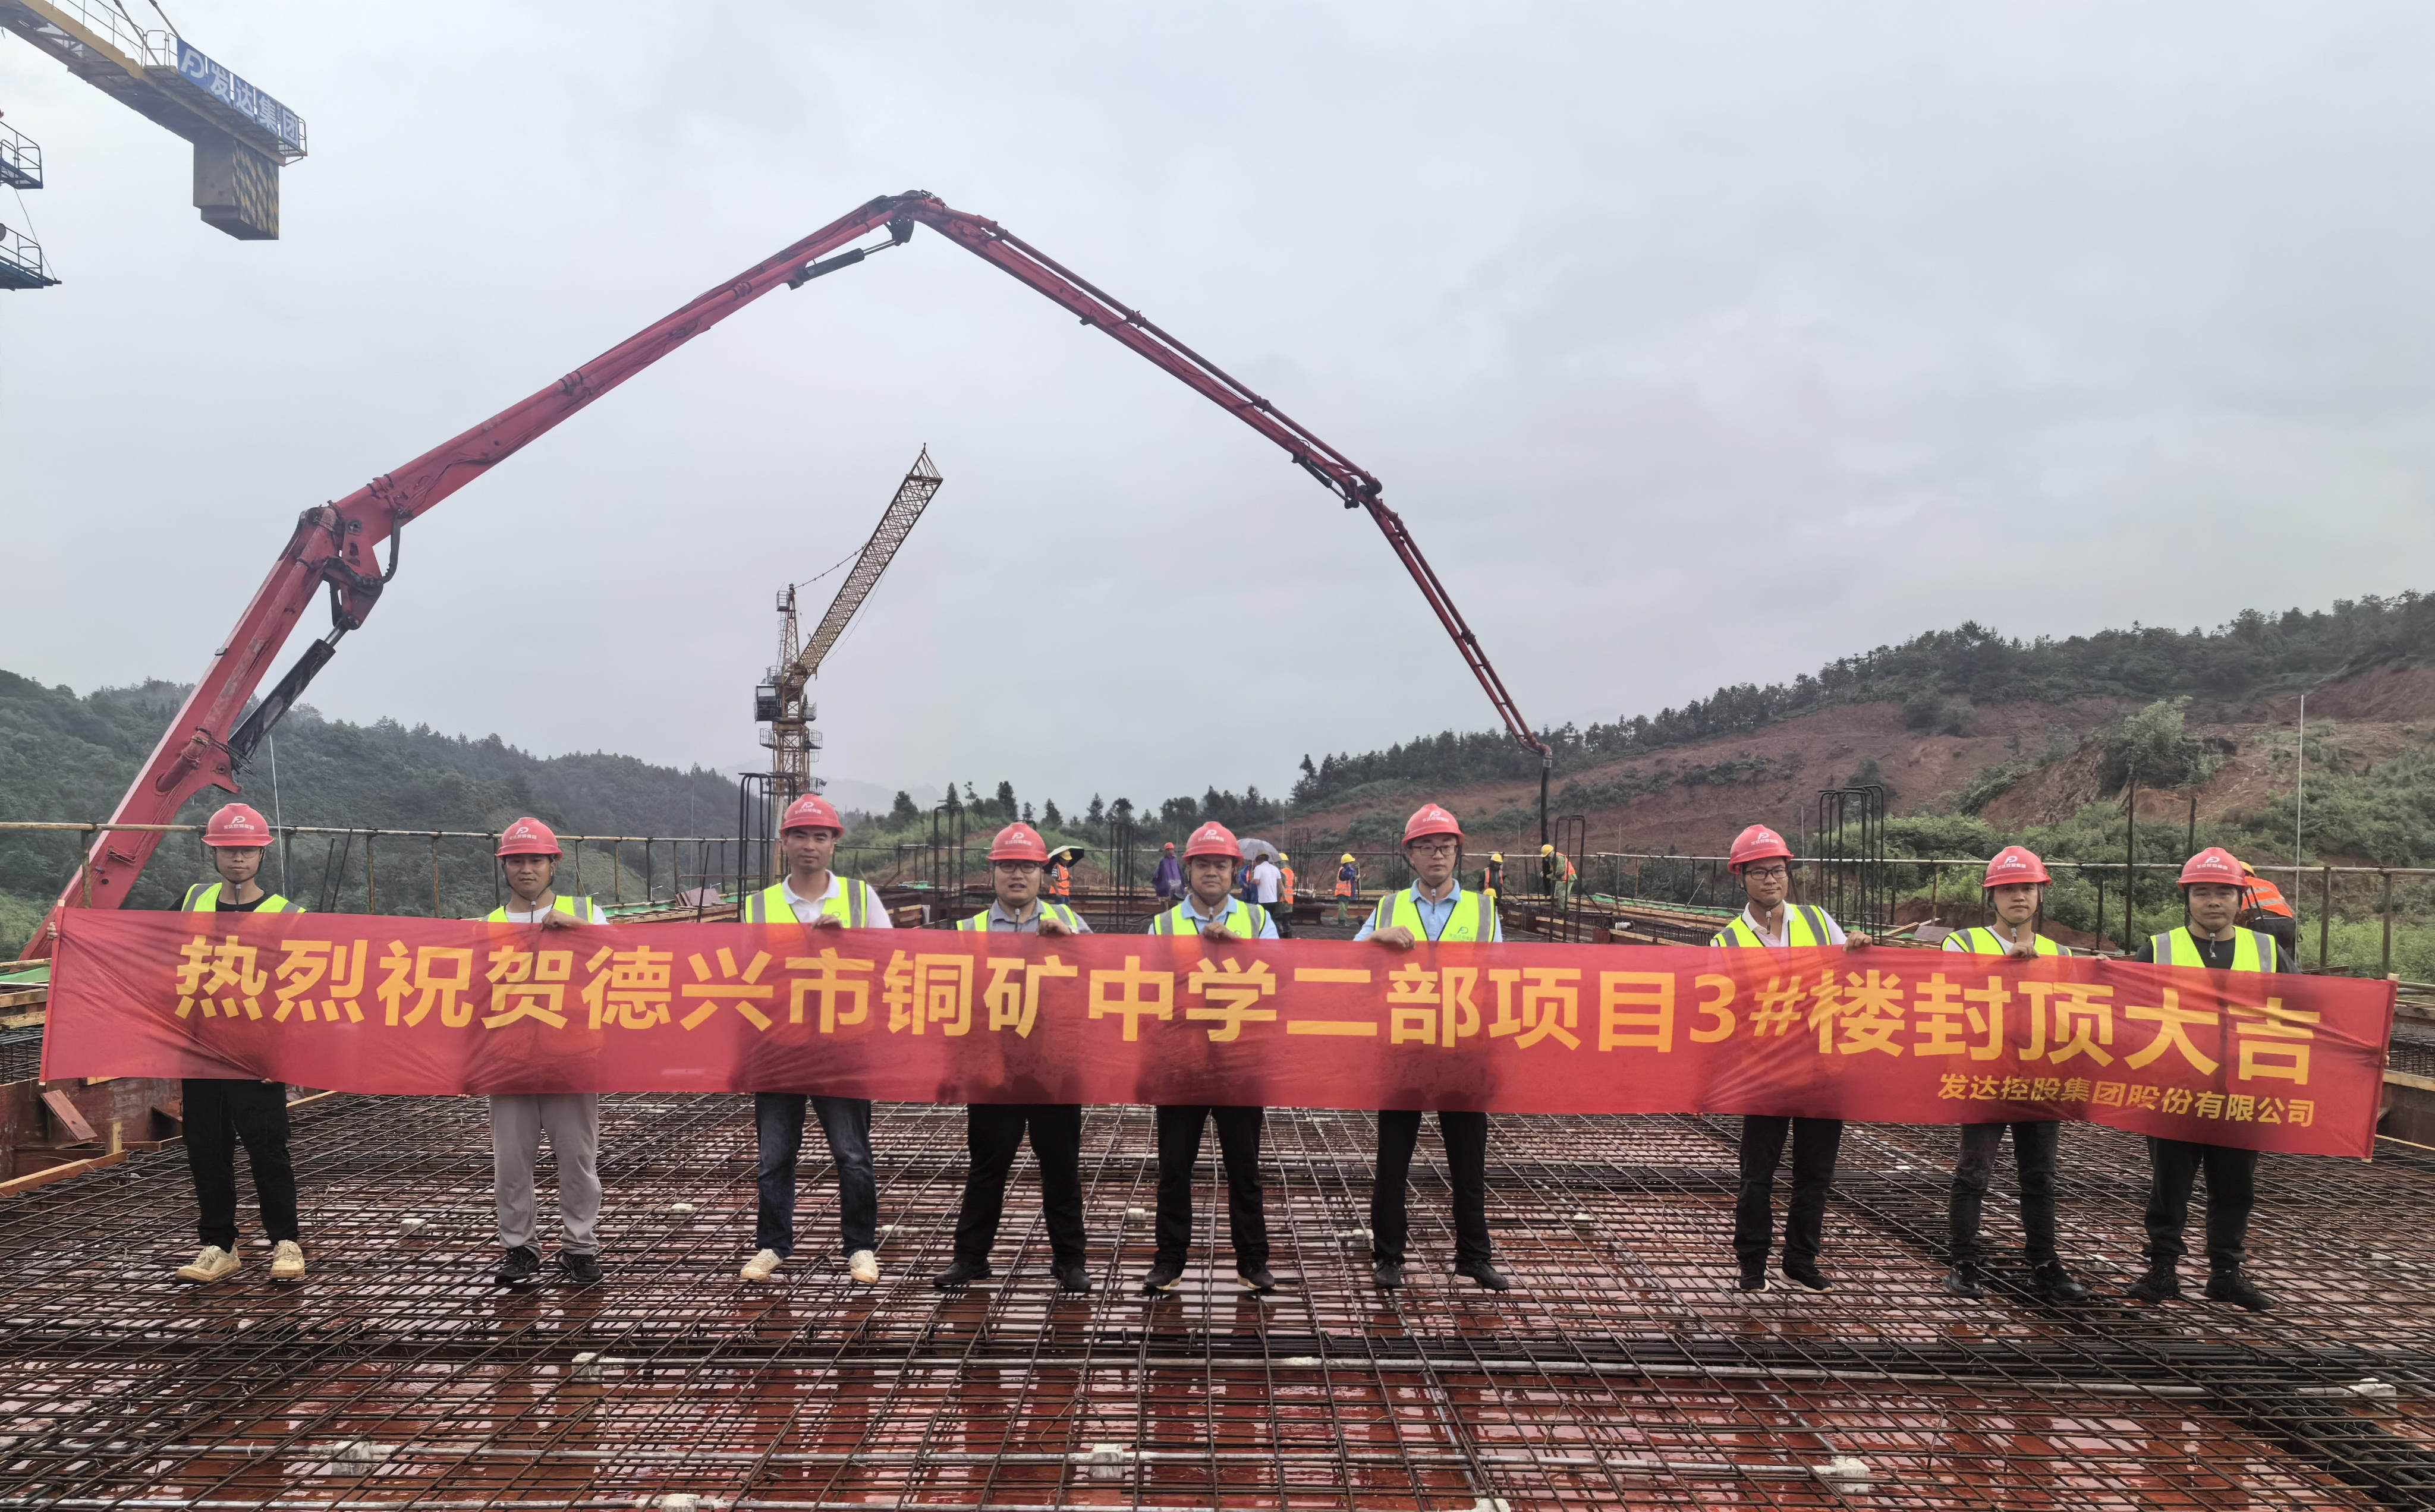 发达控股集团承建的德兴市铜矿中学二部新建项目进入新阶段